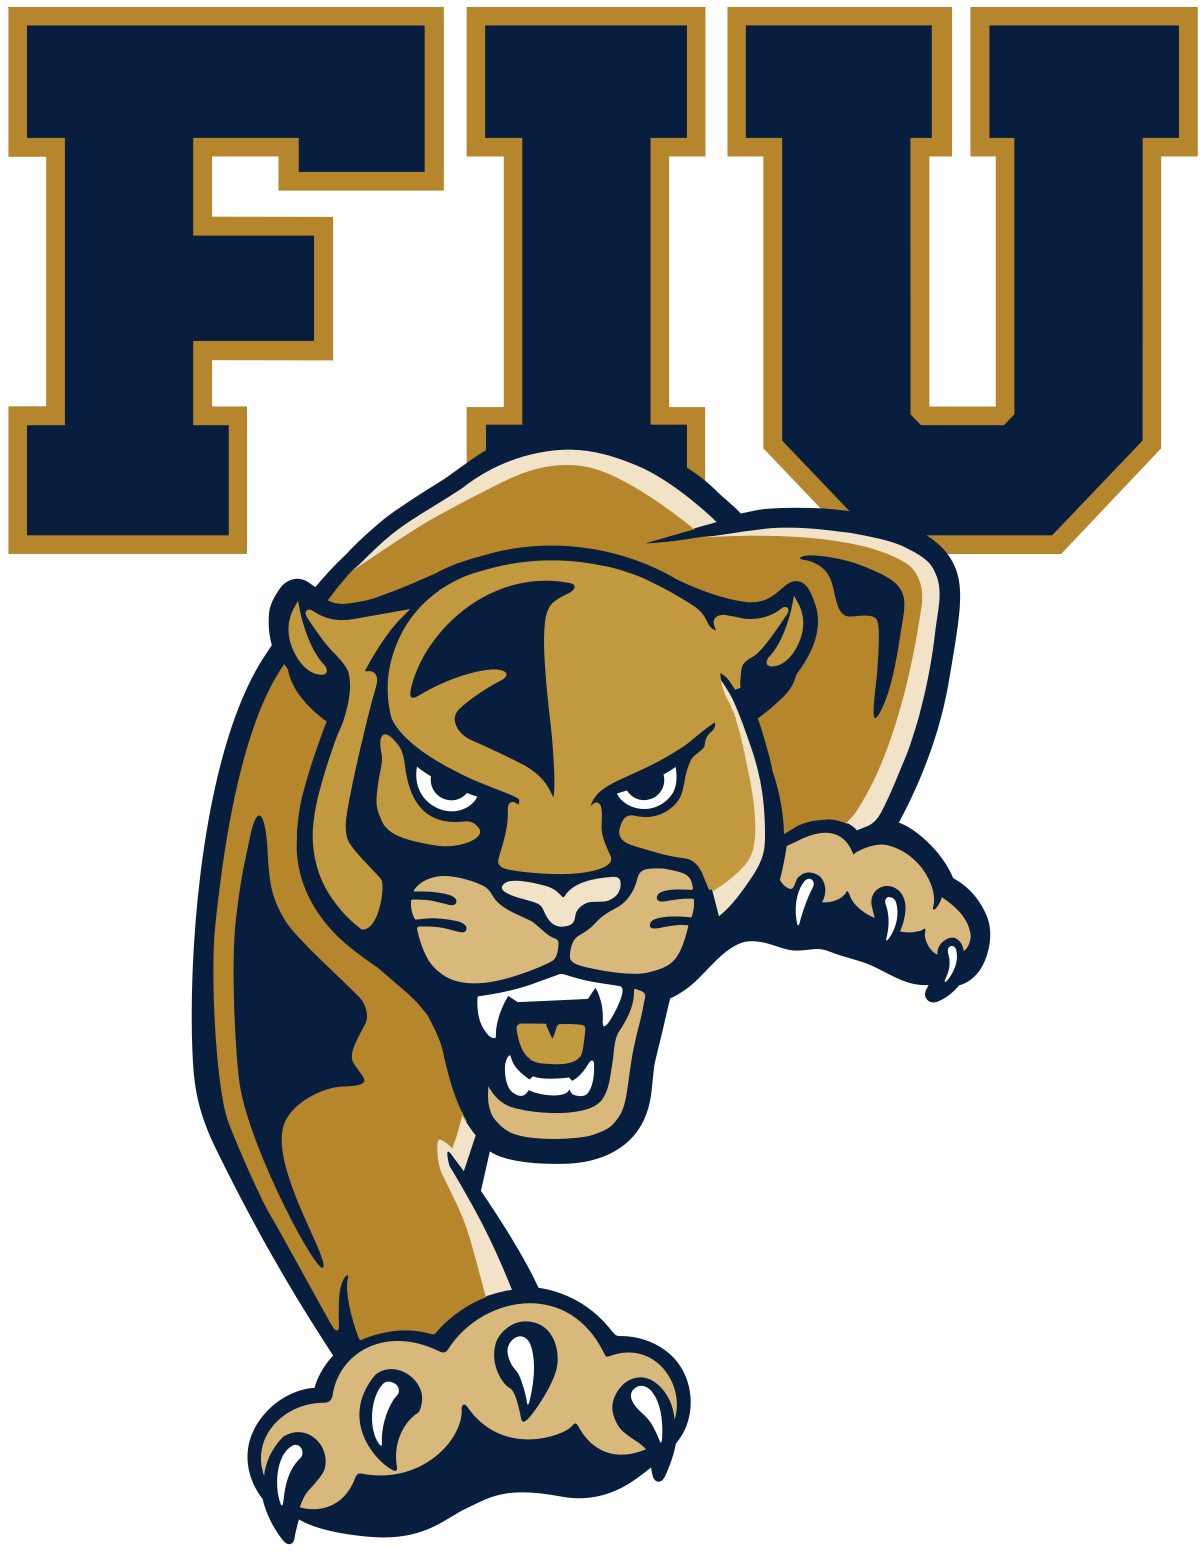 FIU_Panthers_logo